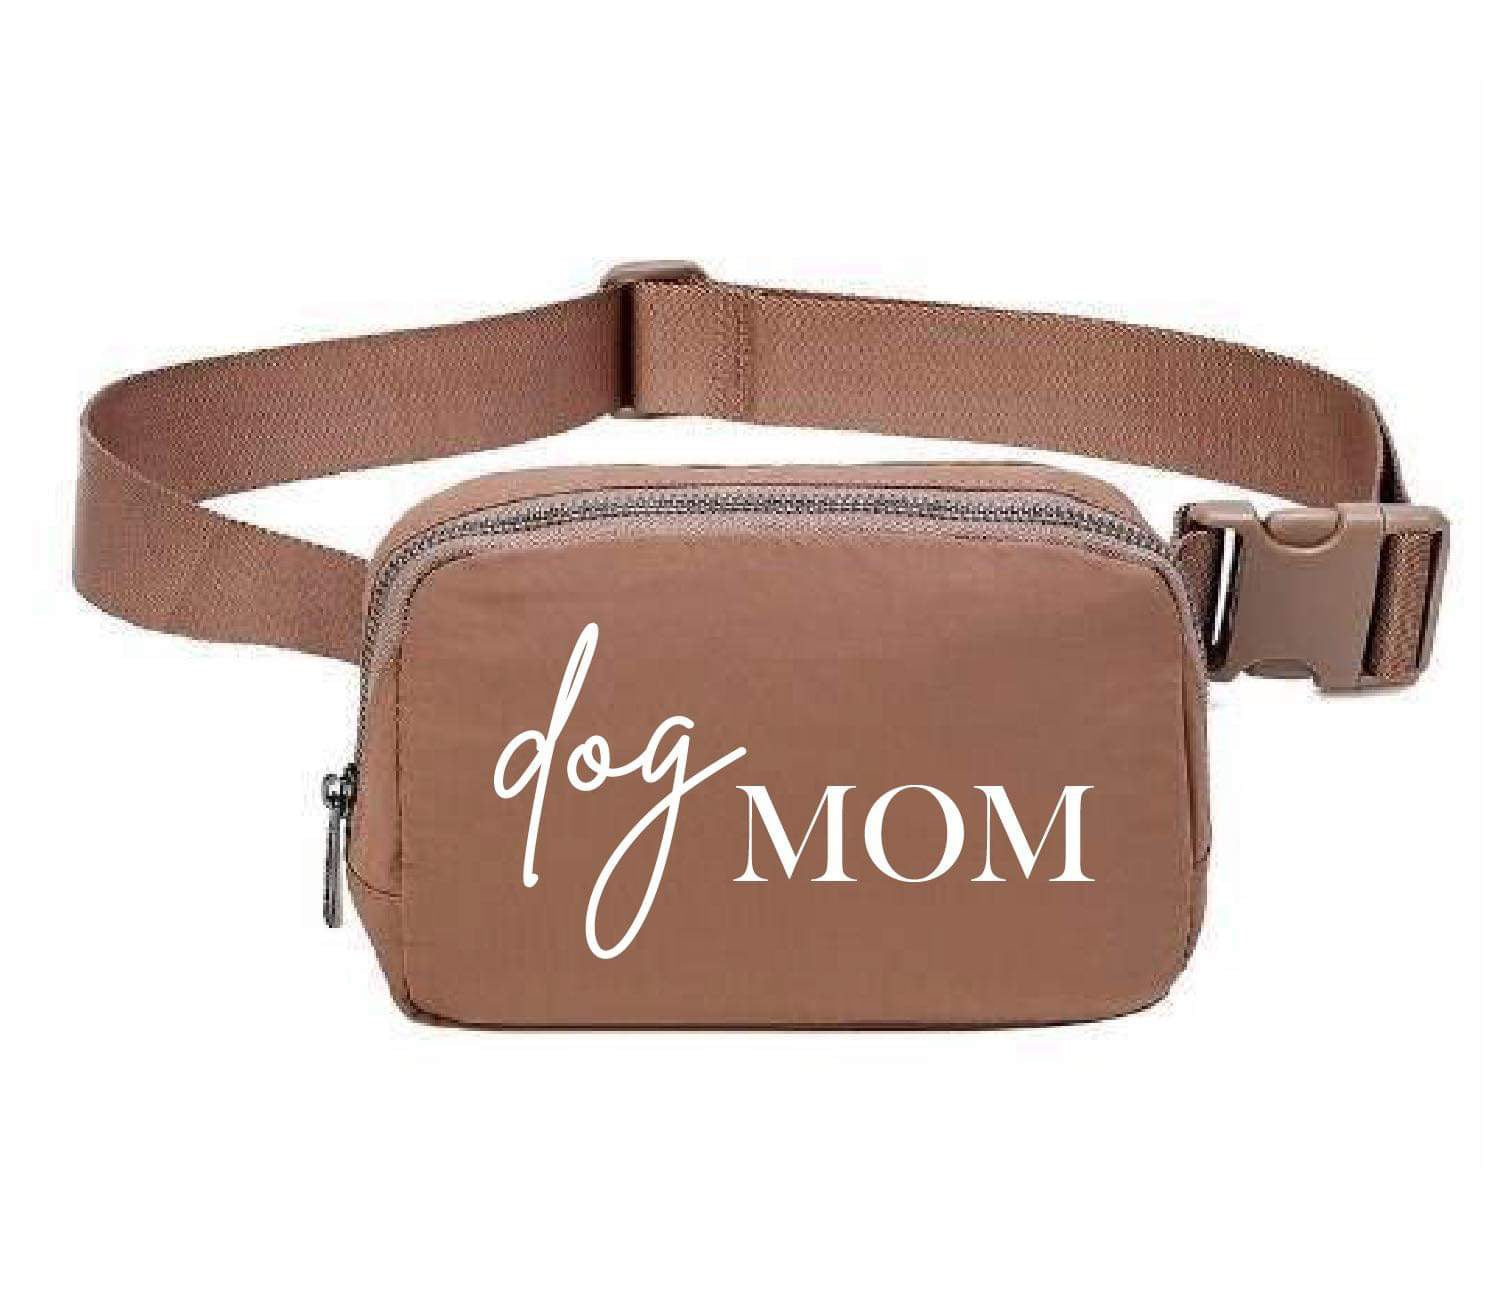 DOG MOM Belt Bag